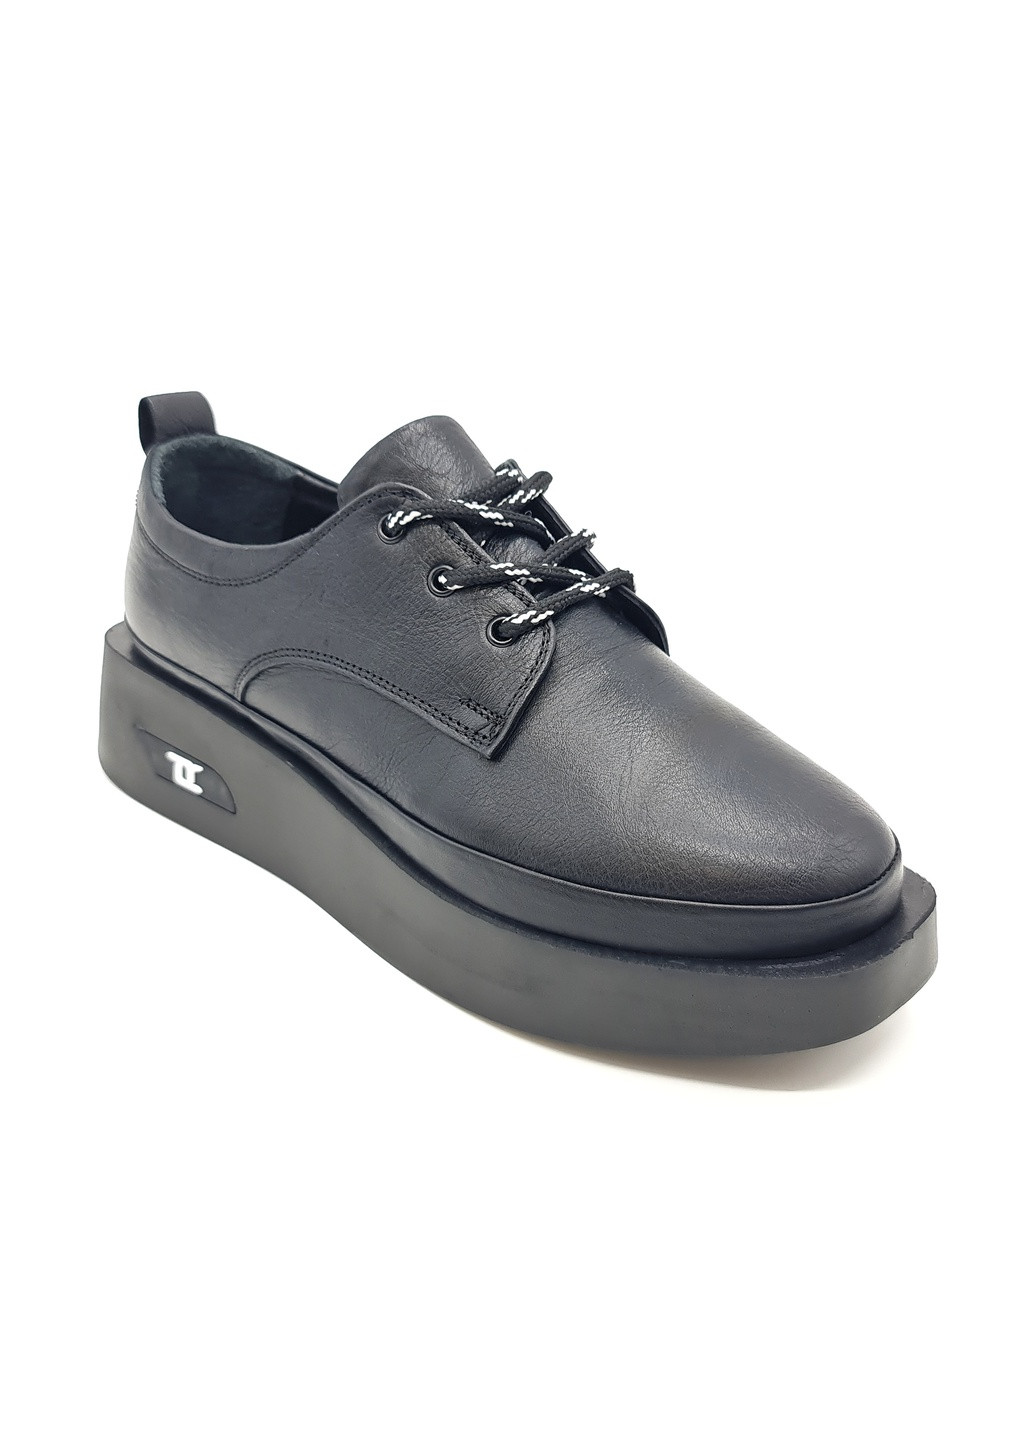 Женские туфли черные кожаные L-11-1 24,5 см (р) Lonza